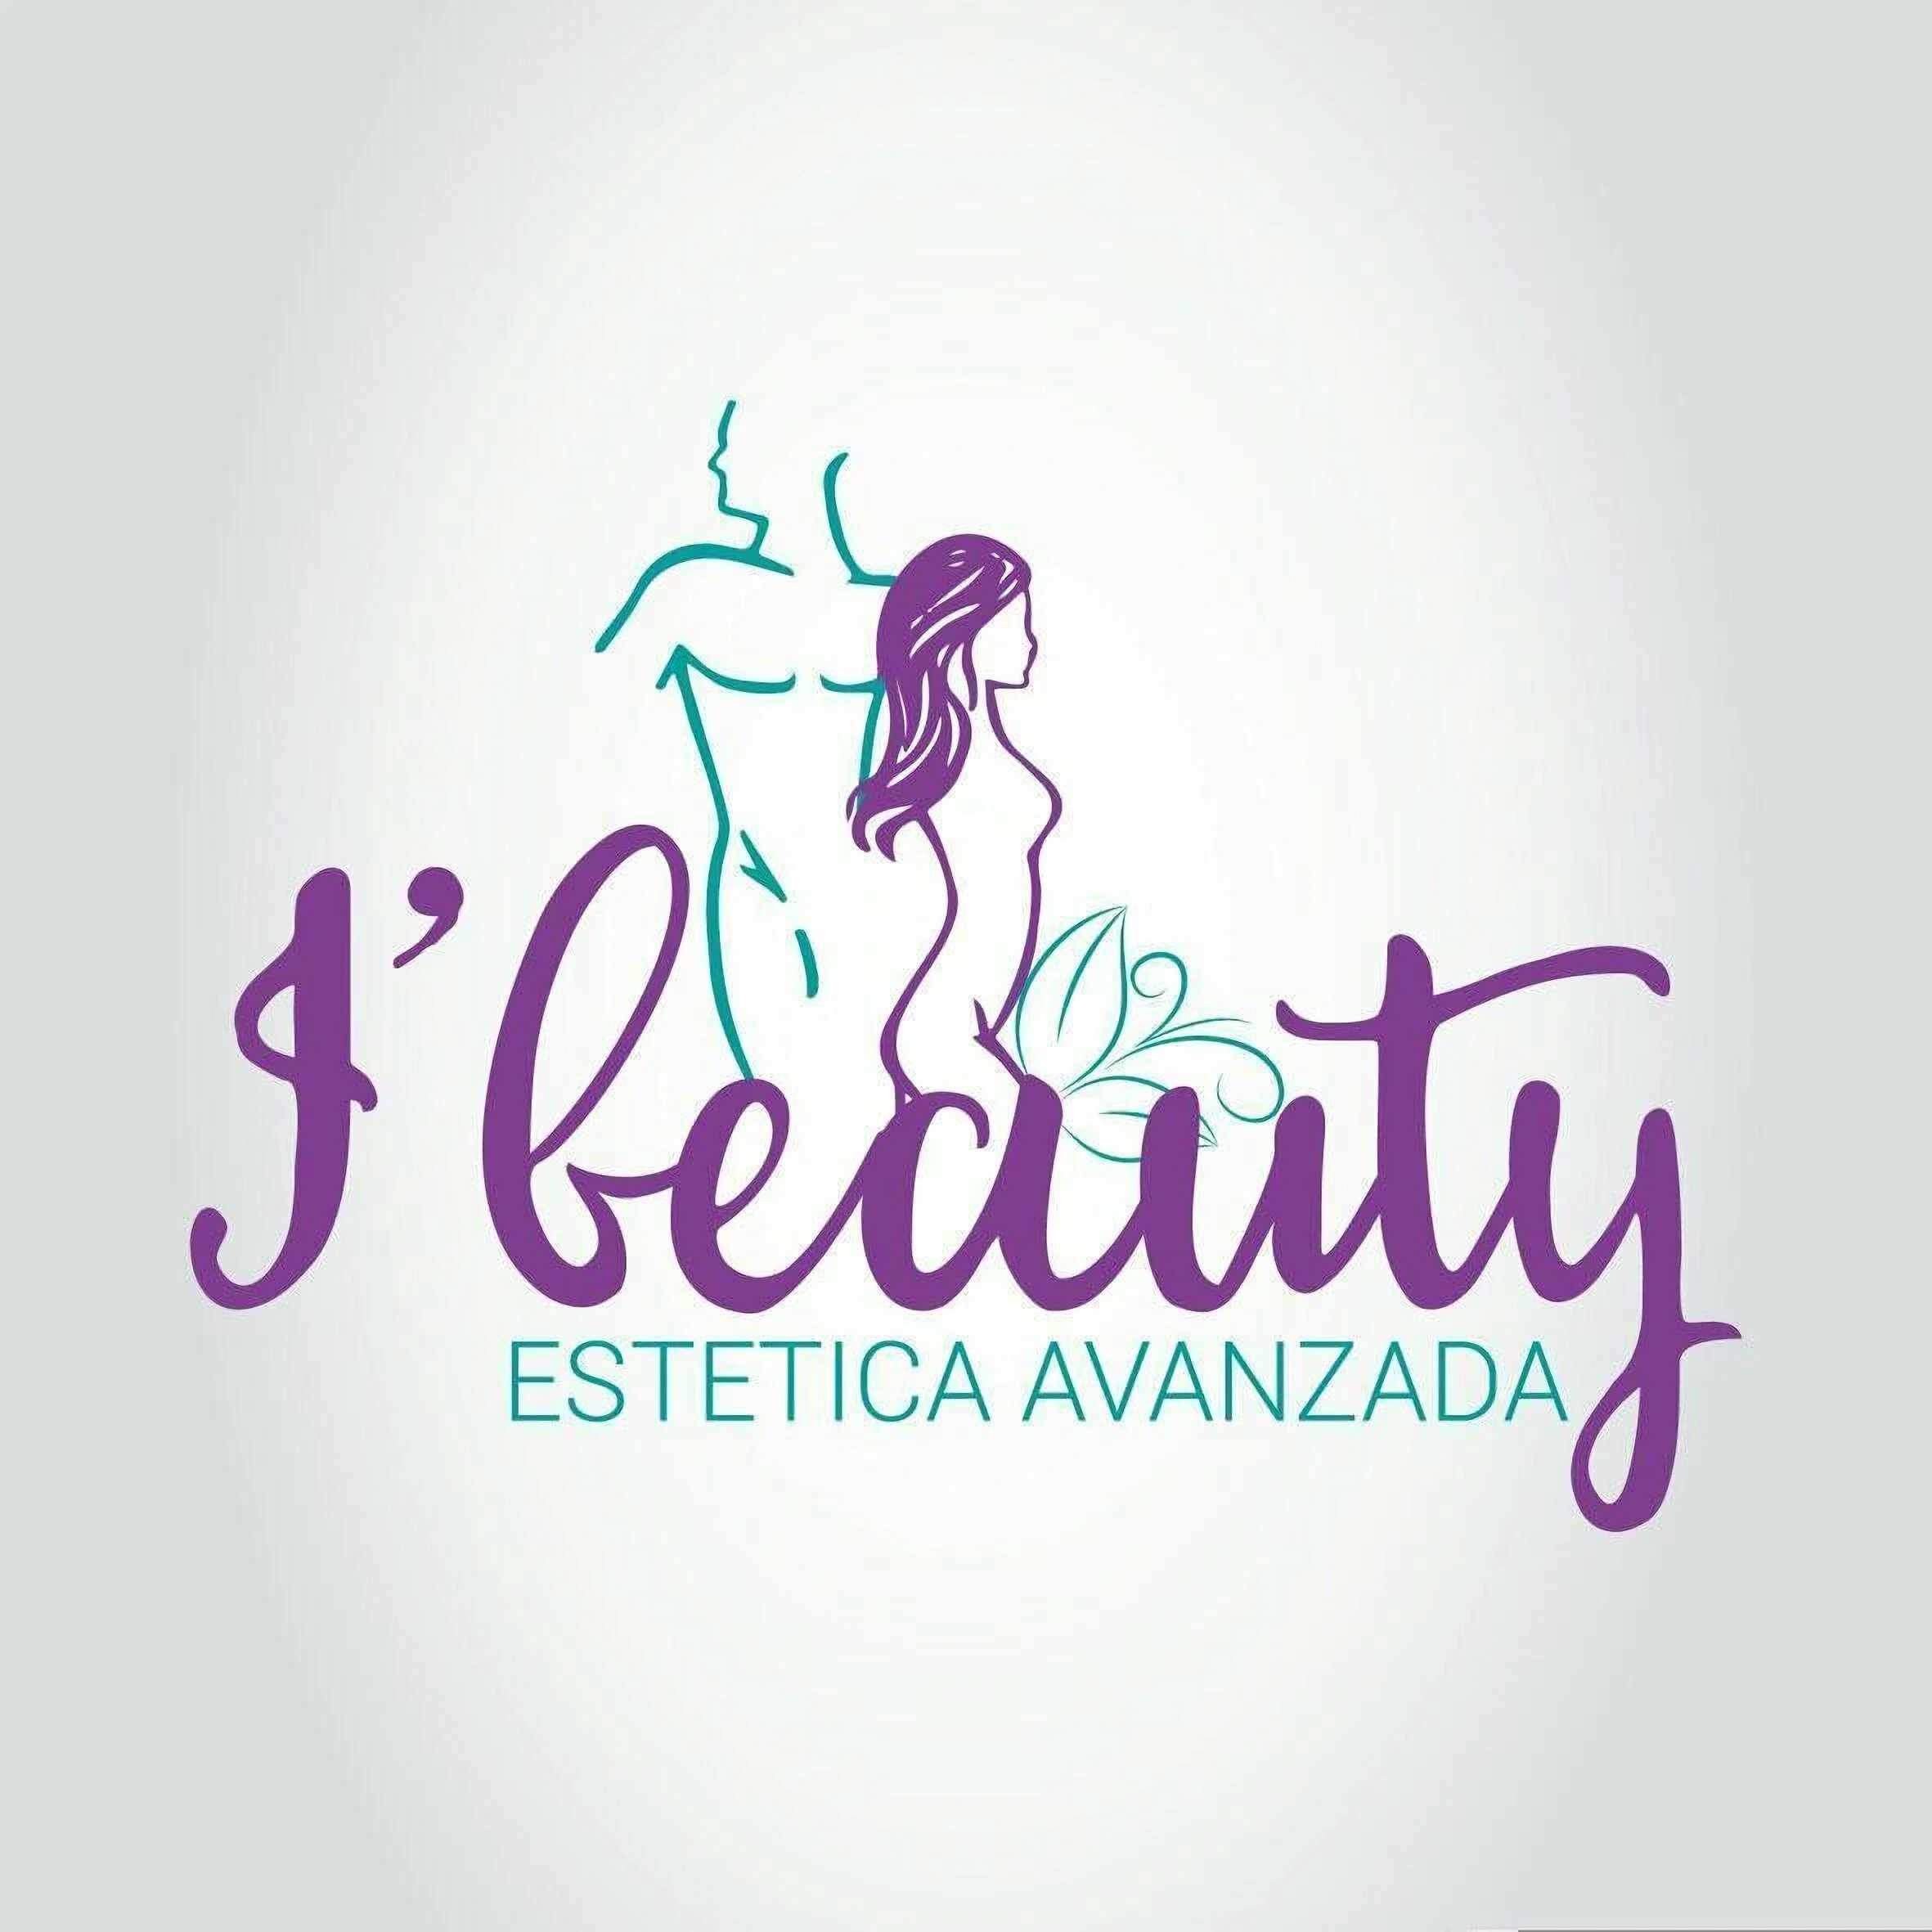 I'Beauty Estética avanzada-2524